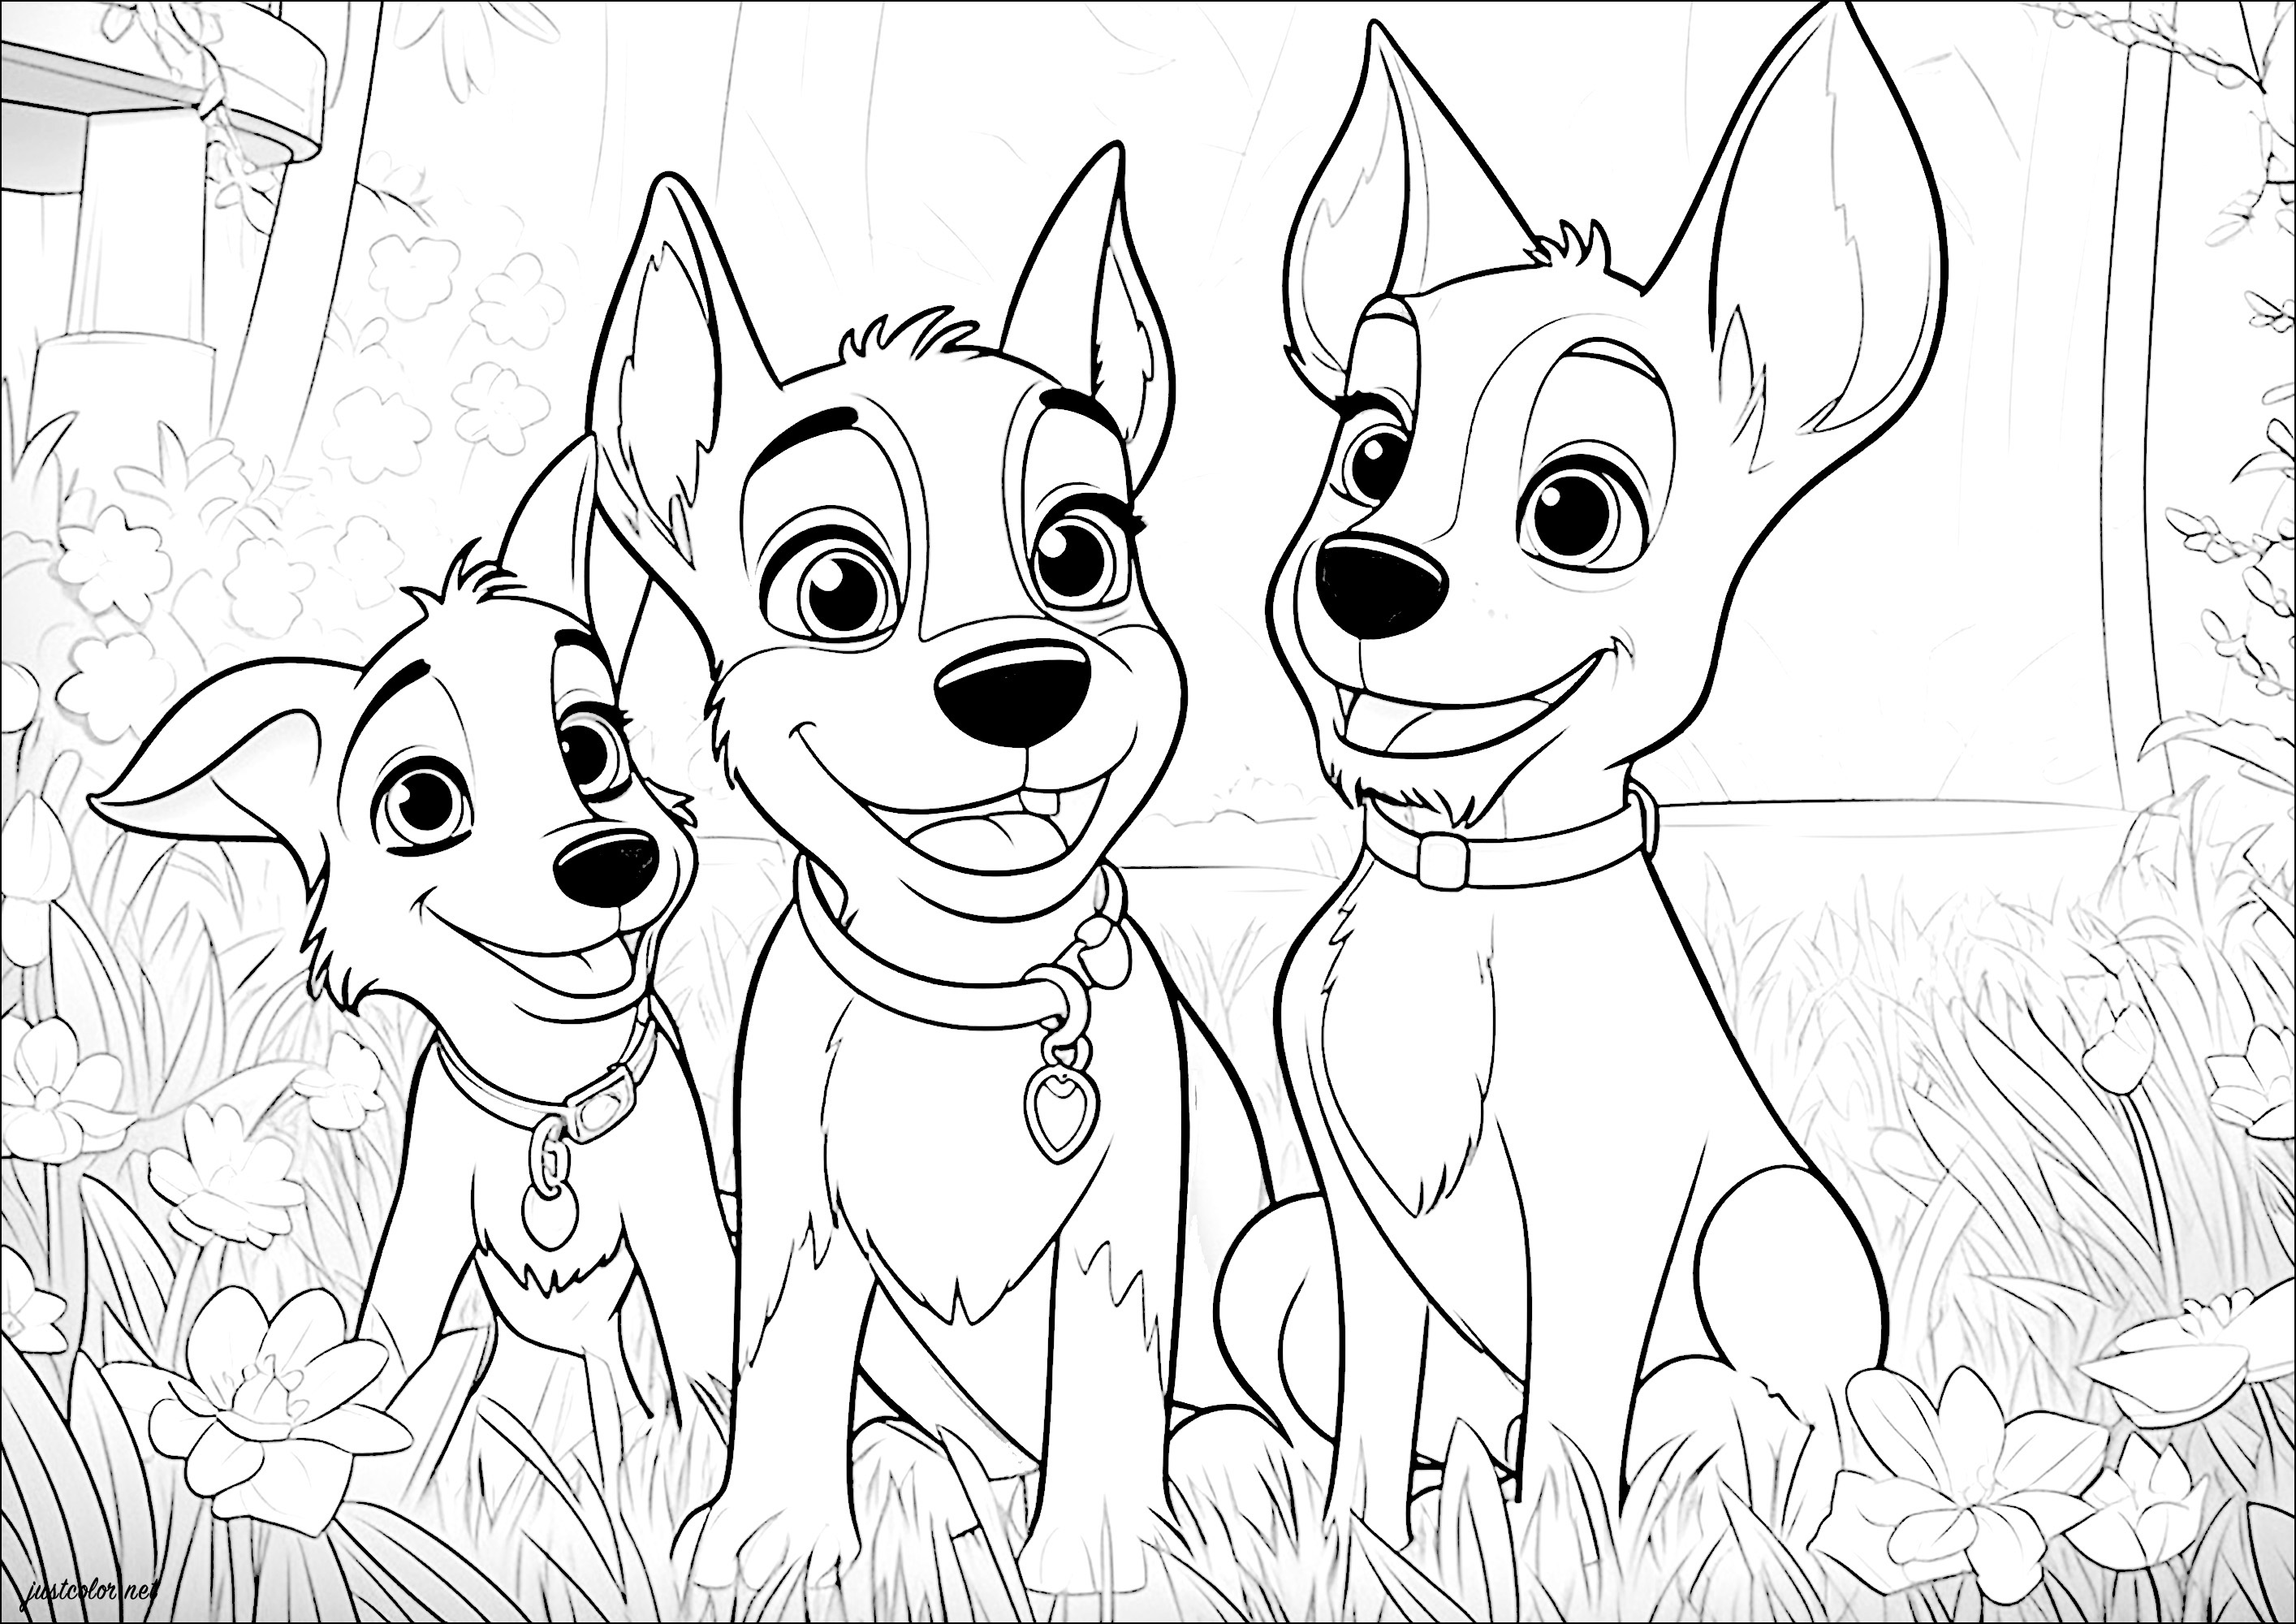 Tre cani felici in giardino. Una semplice pagina da colorare di tre cani in un giardino